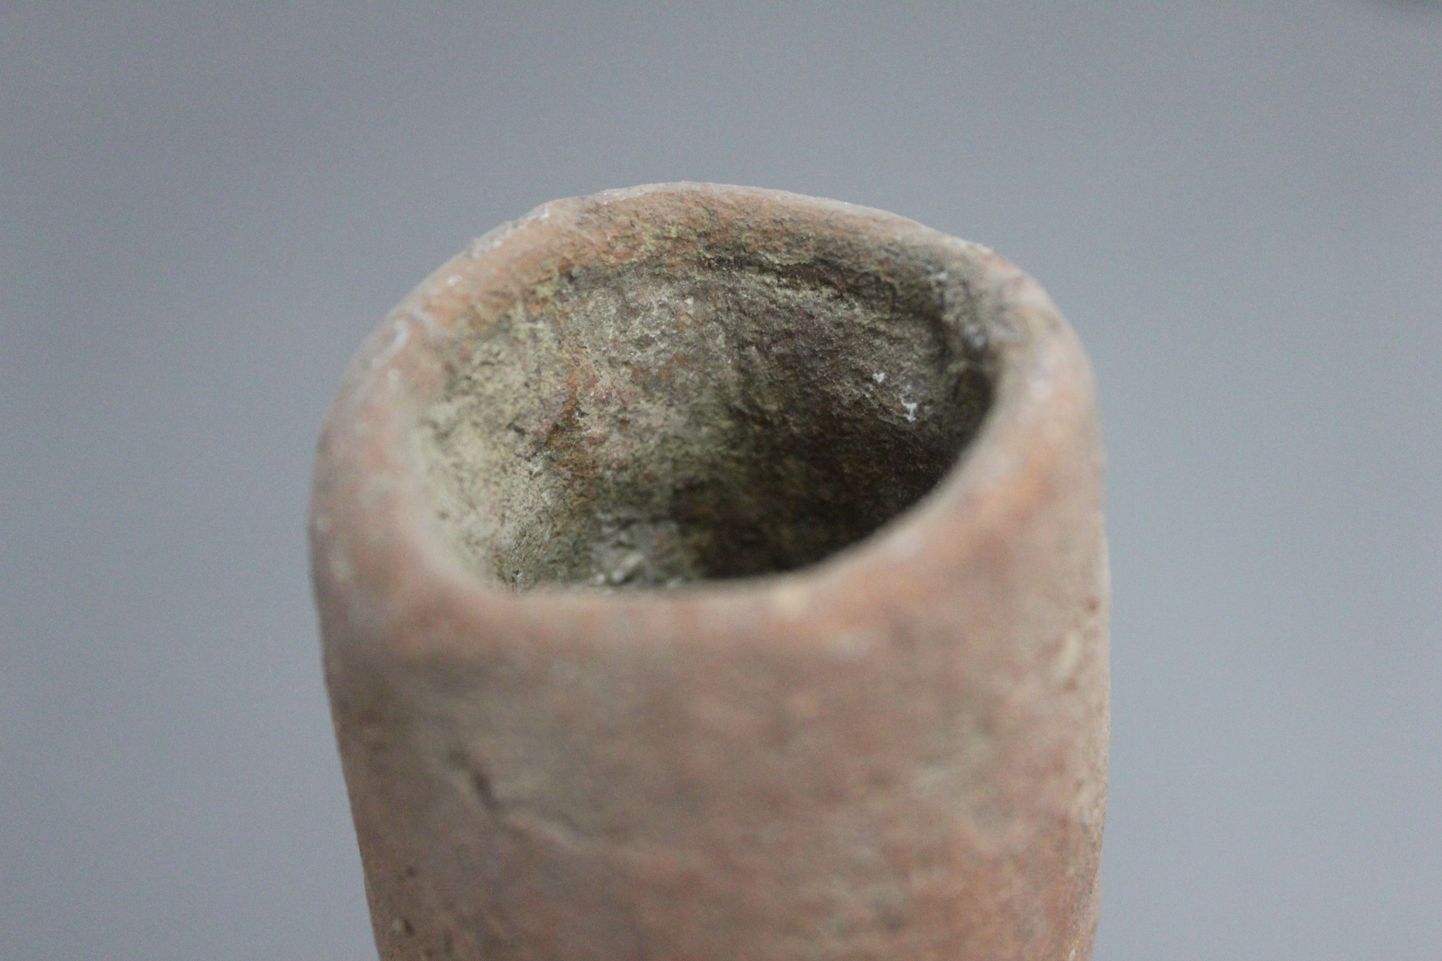 Hiinast Mijiaya leitud objekt, mis viitab õlletegemisele